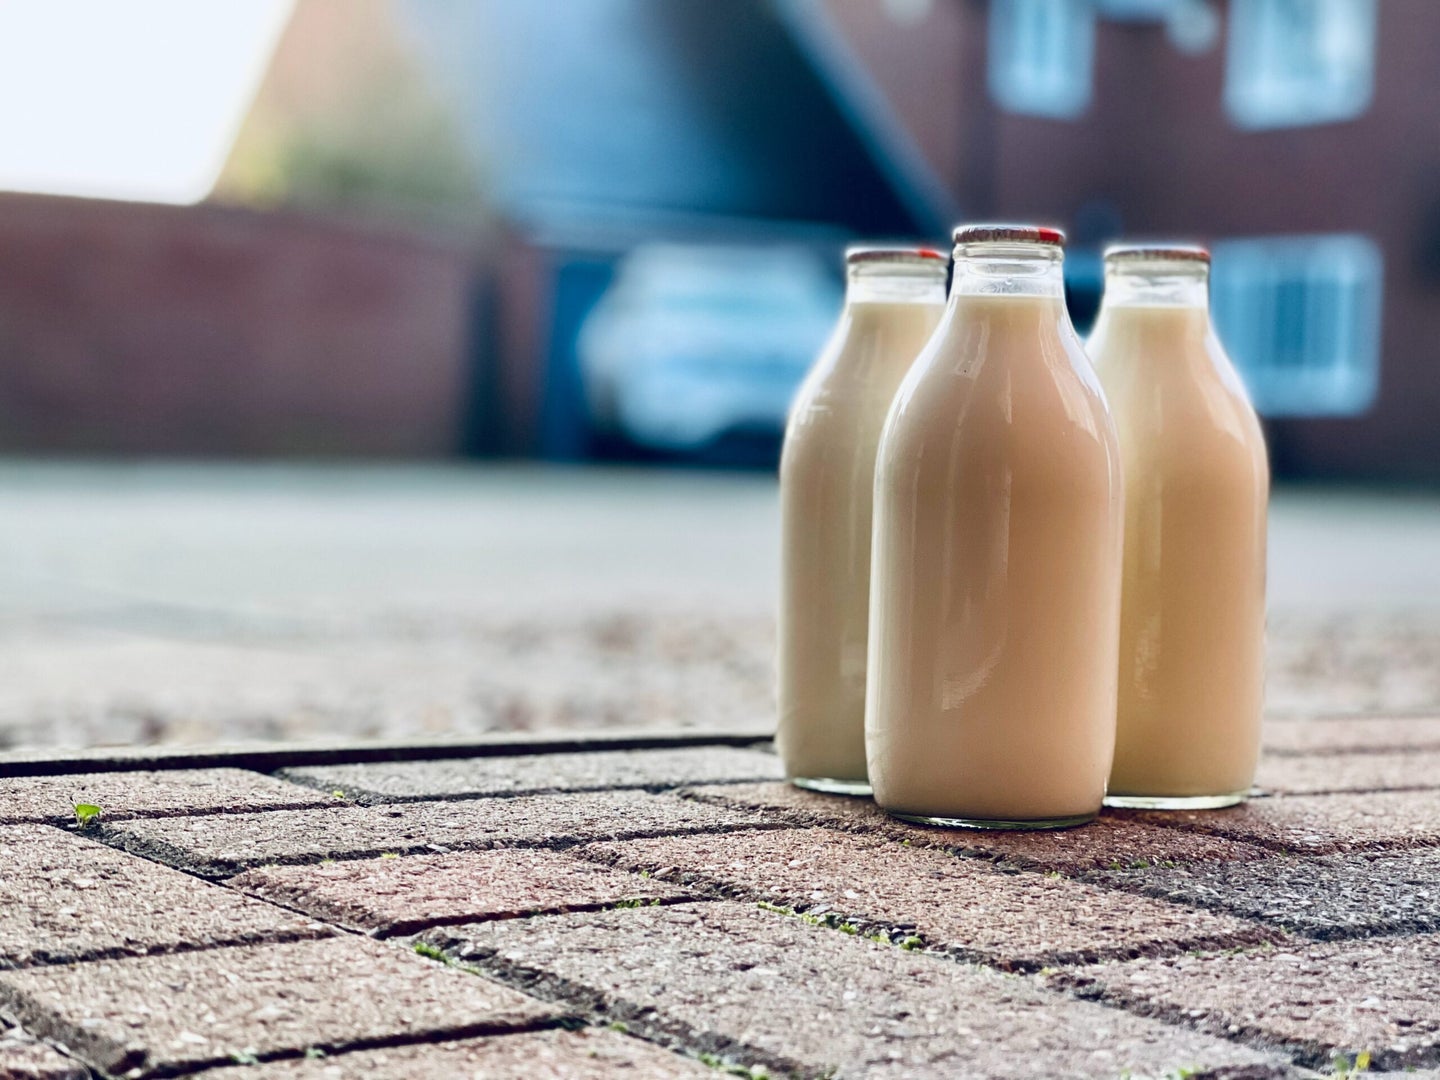 Three jugs of milk on sidewalk.